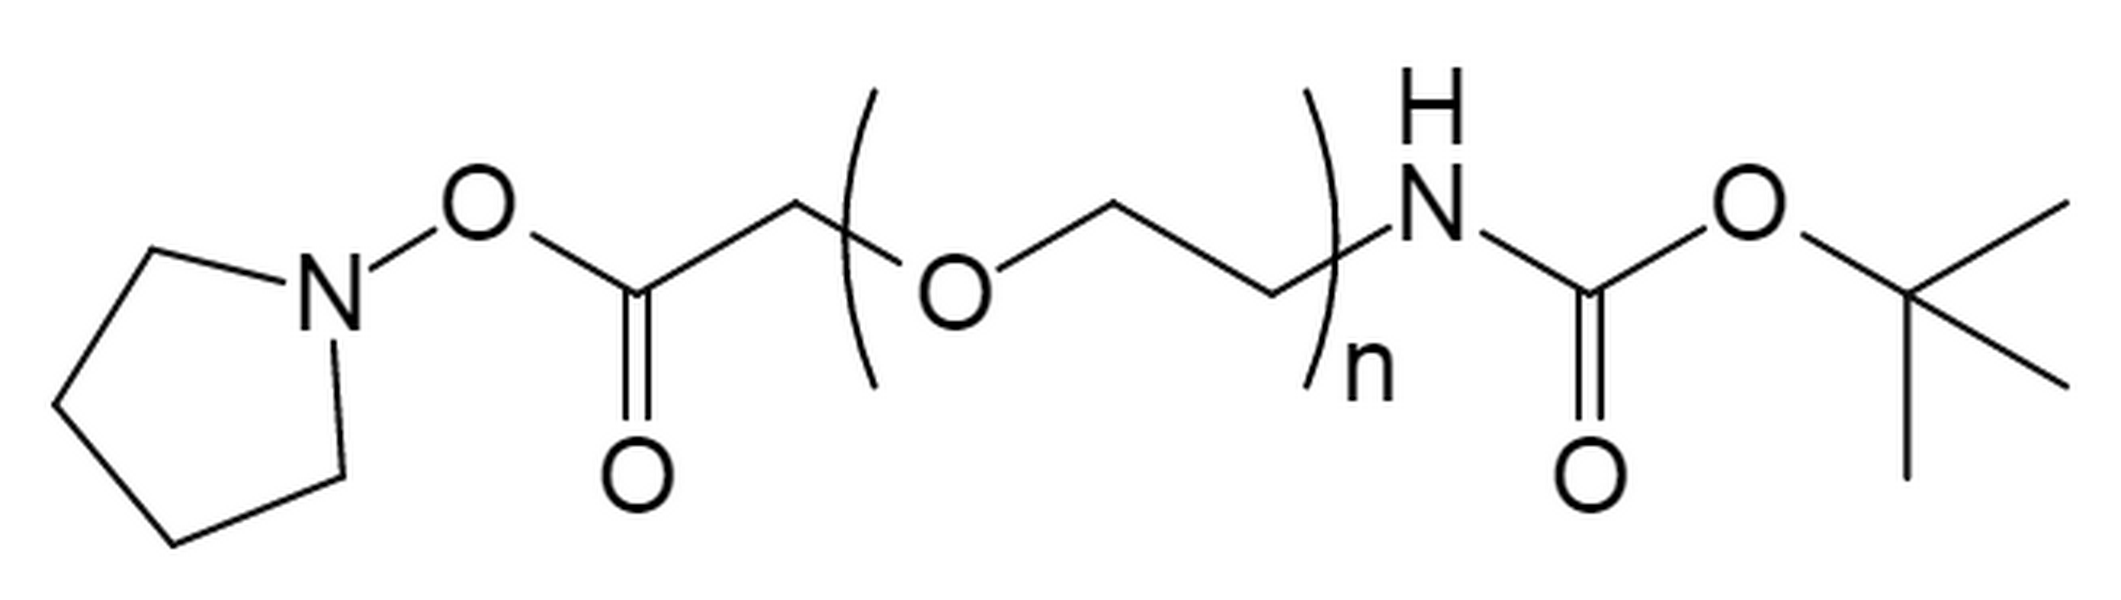 t-Boc Amine PEG Succinimidyl Carboxymethyl Ester,MW 2K